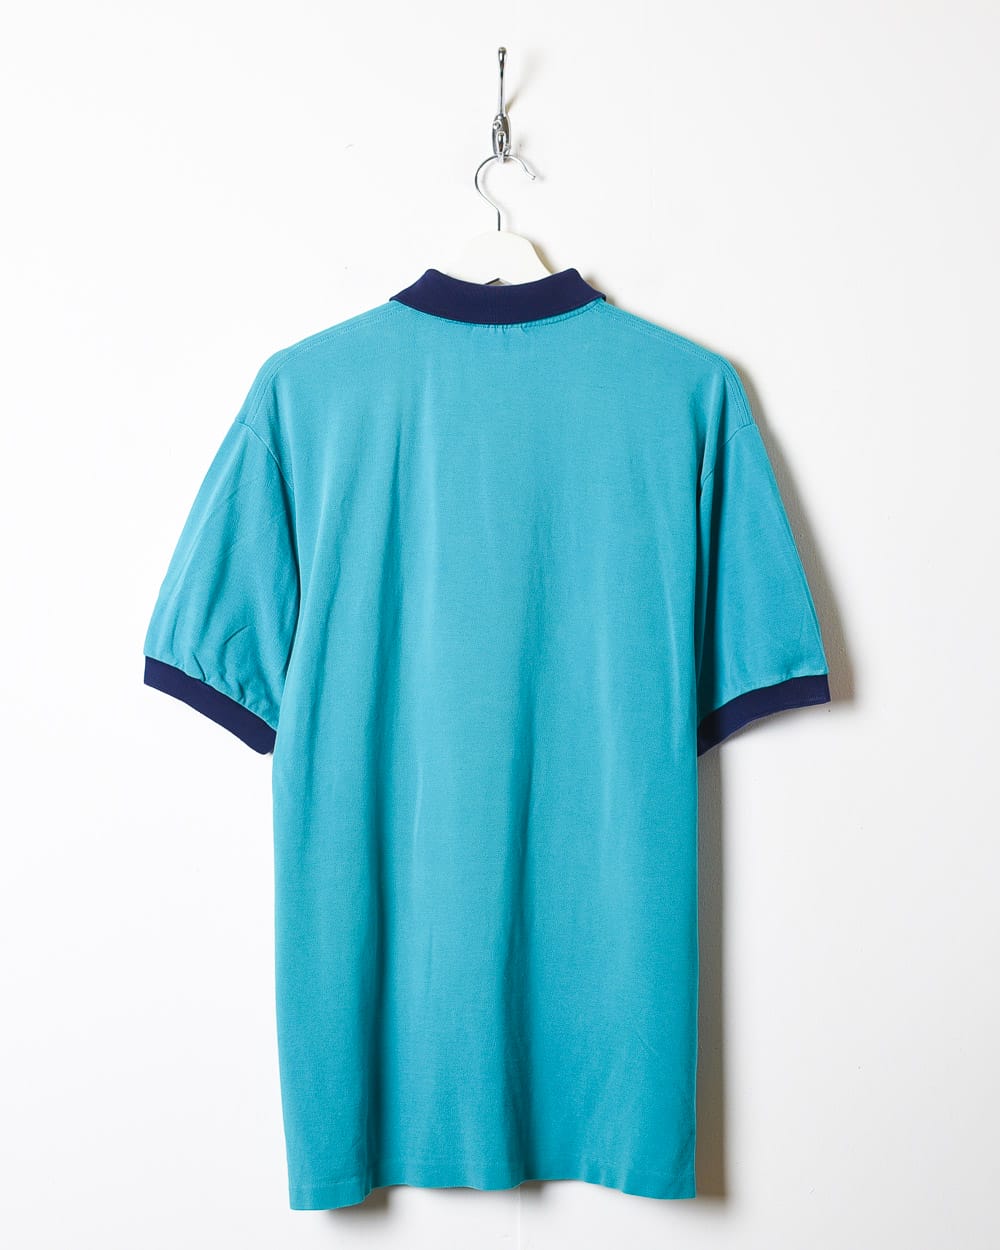 BabyBlue Chemise Lacoste Polo Shirt - Medium